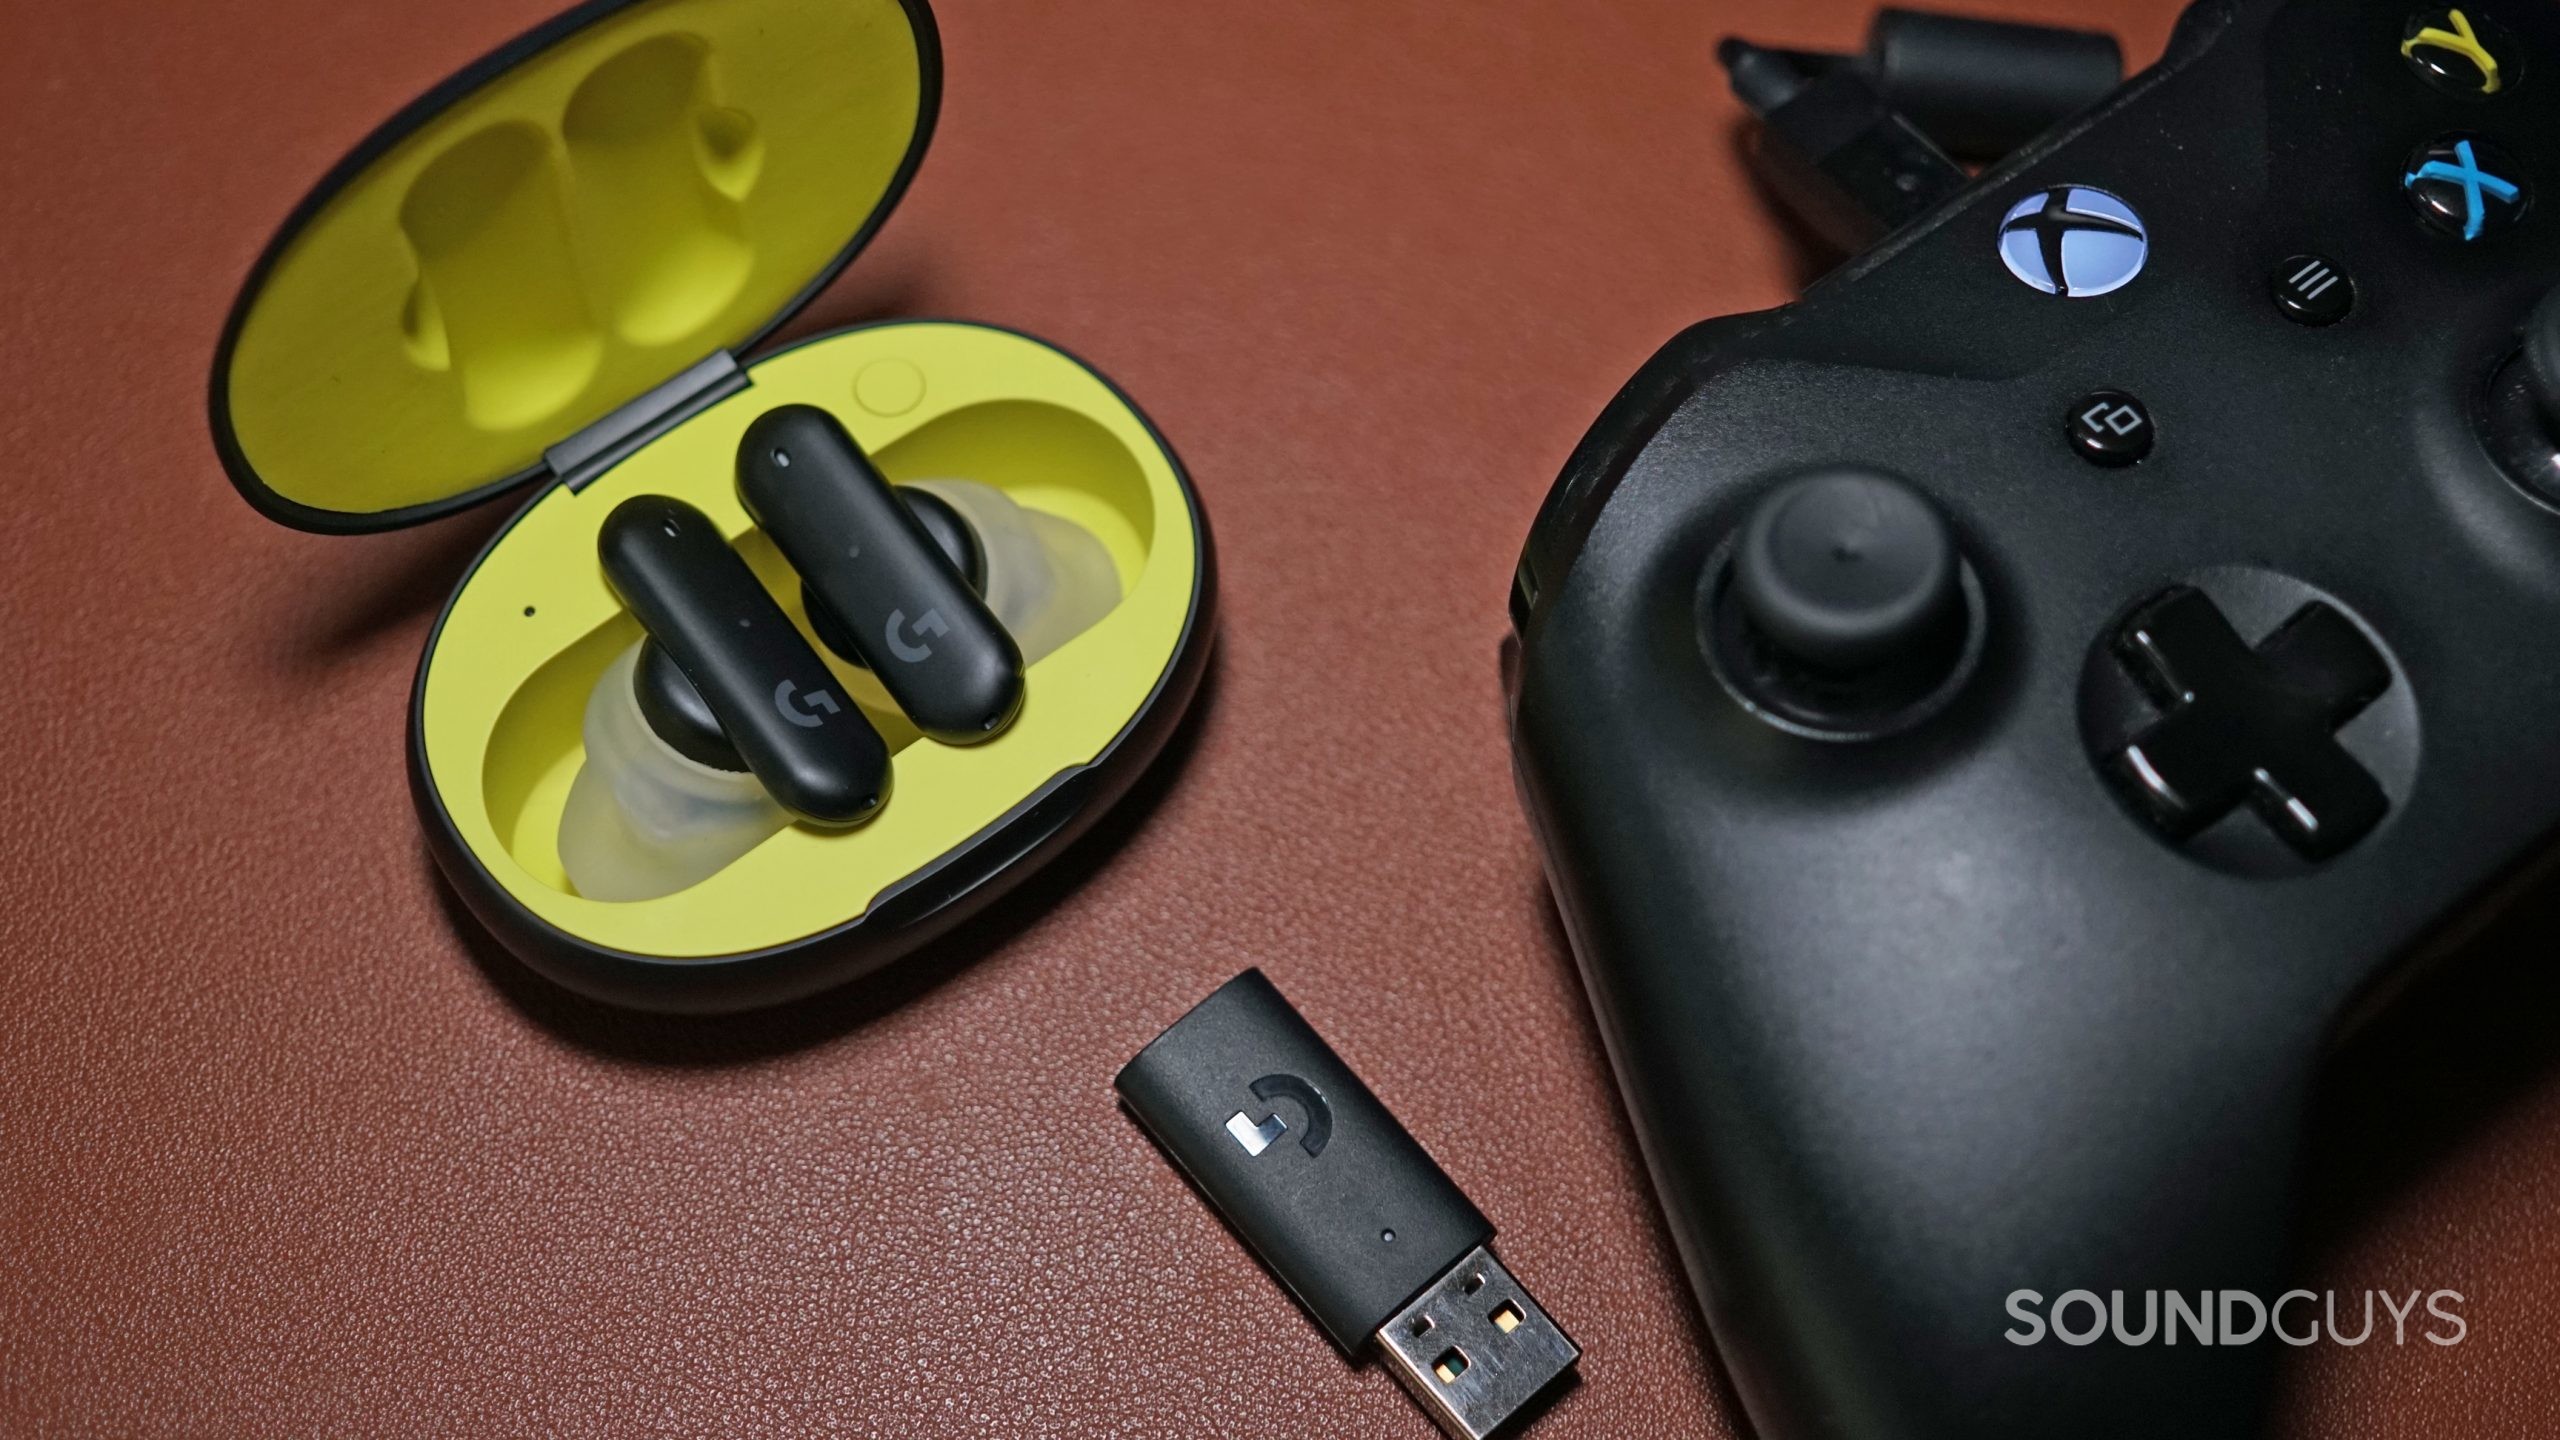 Logitech G подходит для наушников, расположенных в корпусе зарядки рядом с USB -ключом и контроллером Xbox One